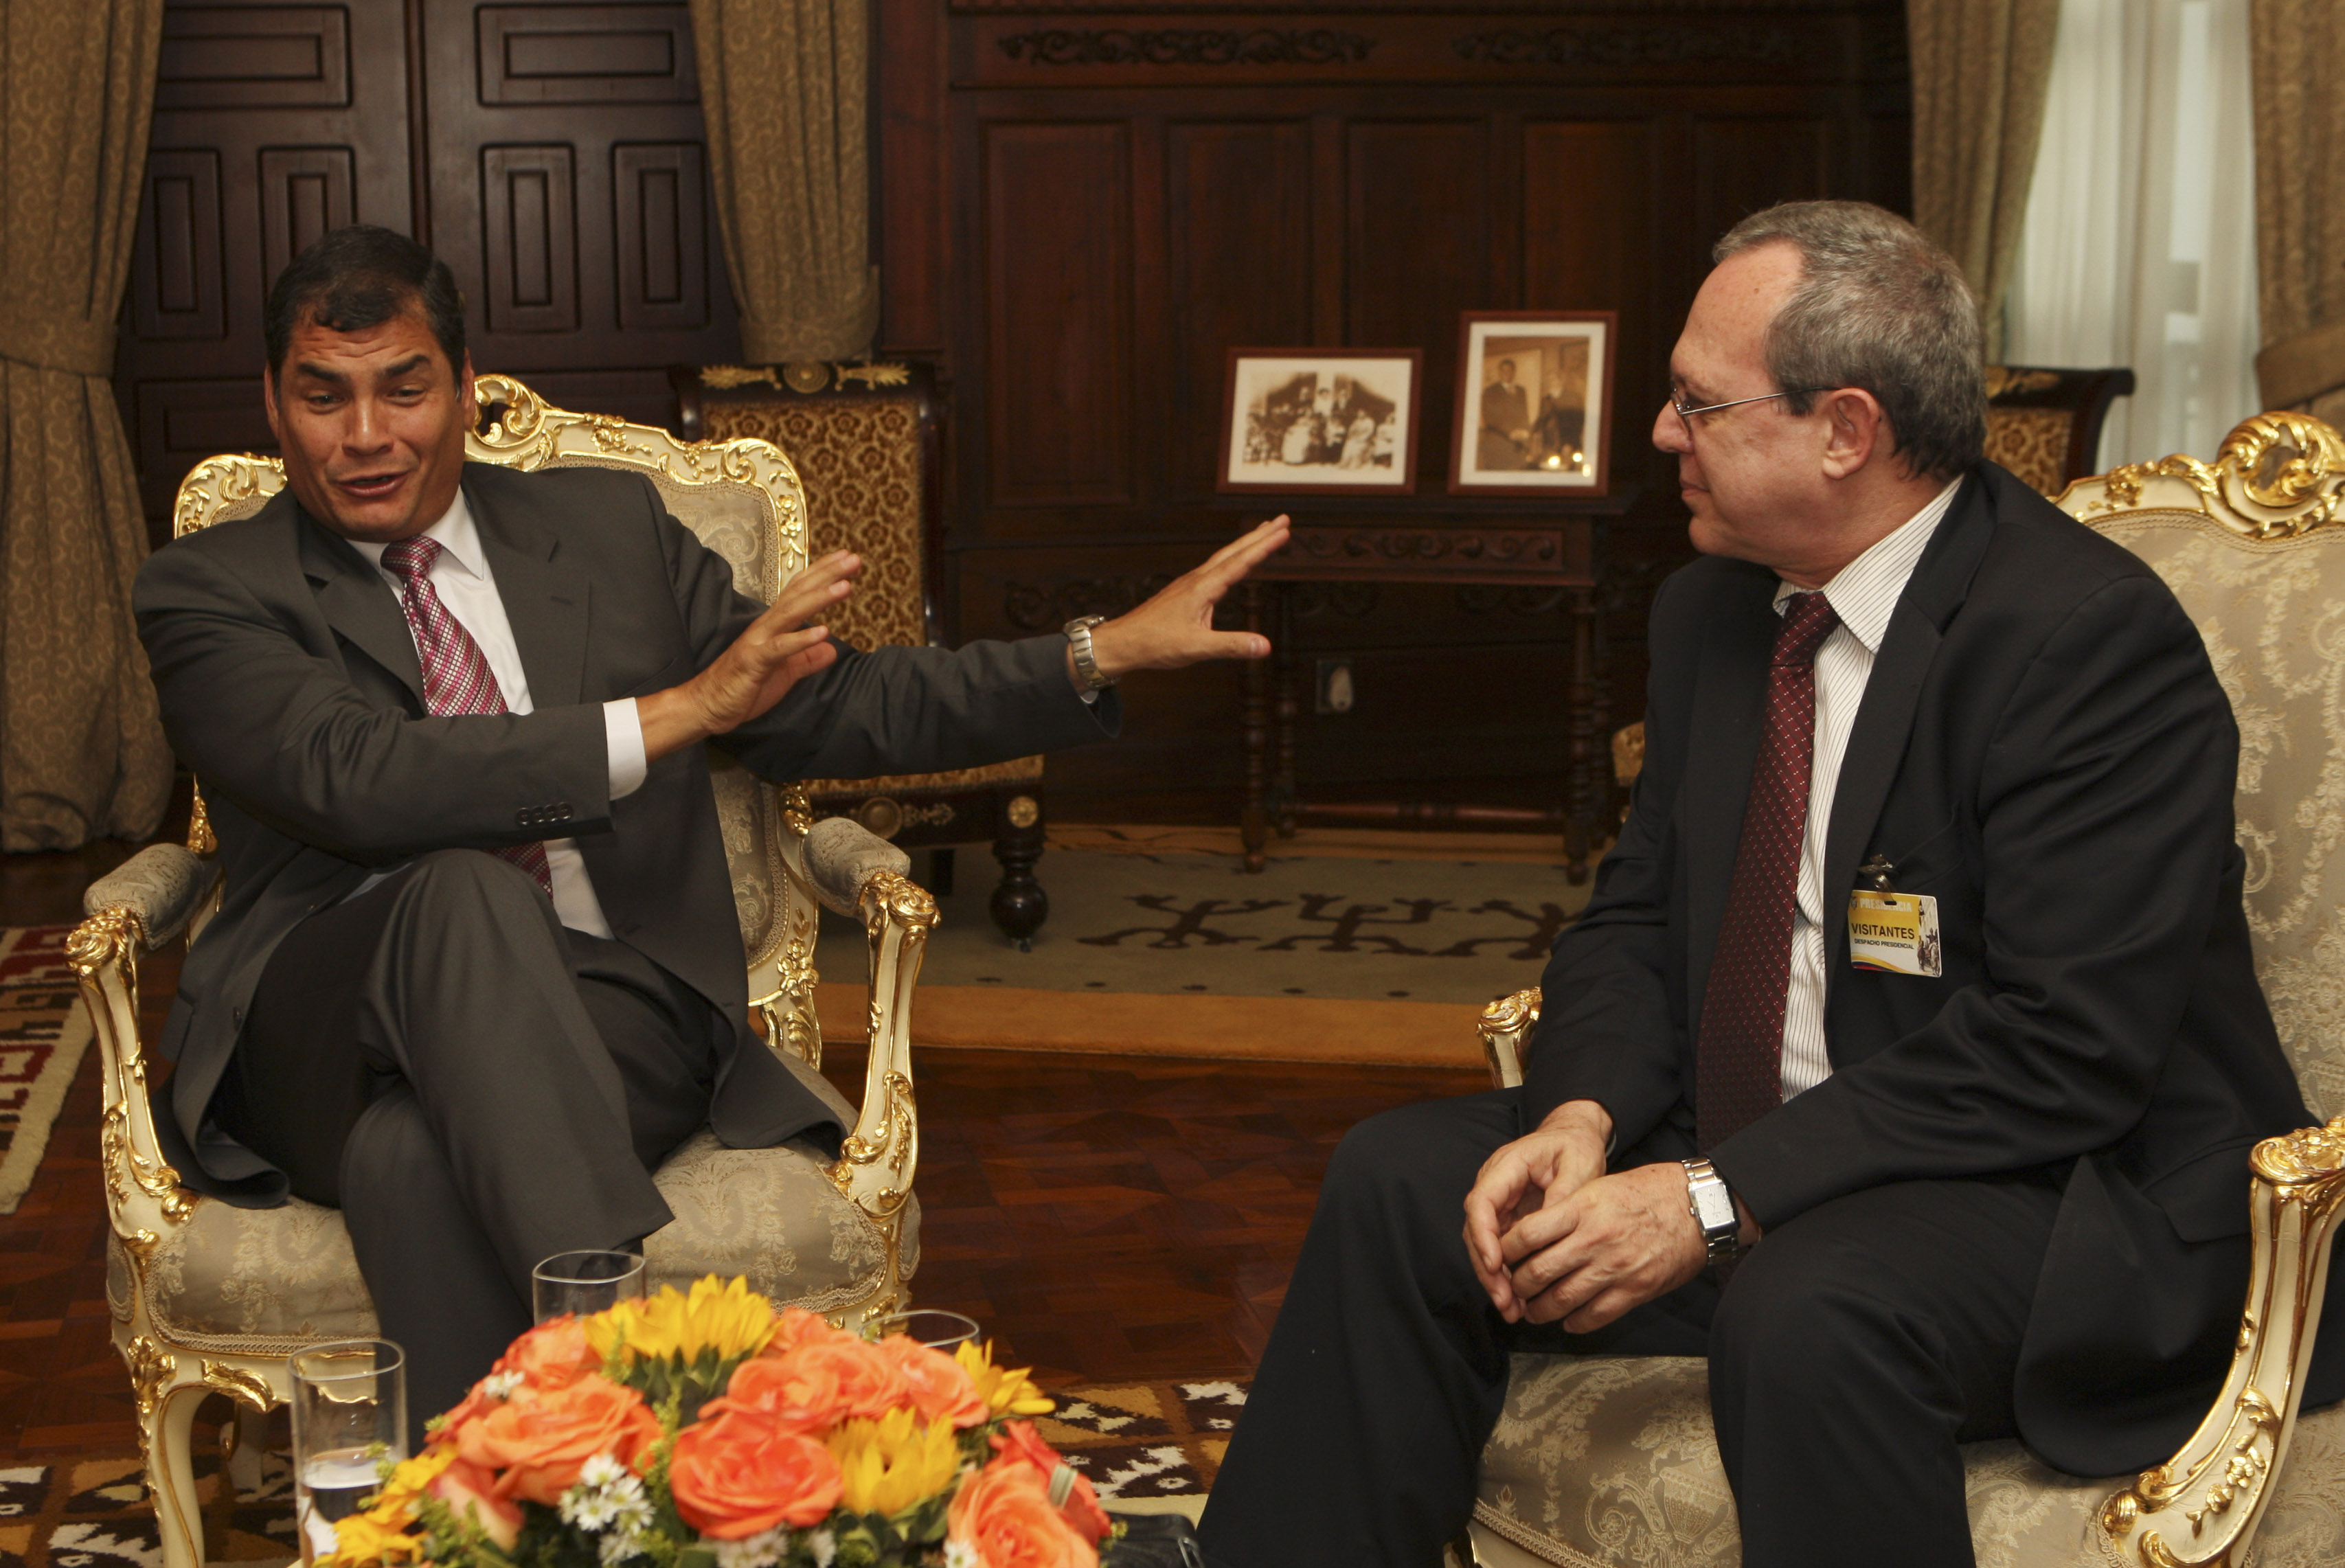 Ecuadors president Rafael Correa tillsammans med FN:s specialrapportör Frank La Rue till höger i bild.